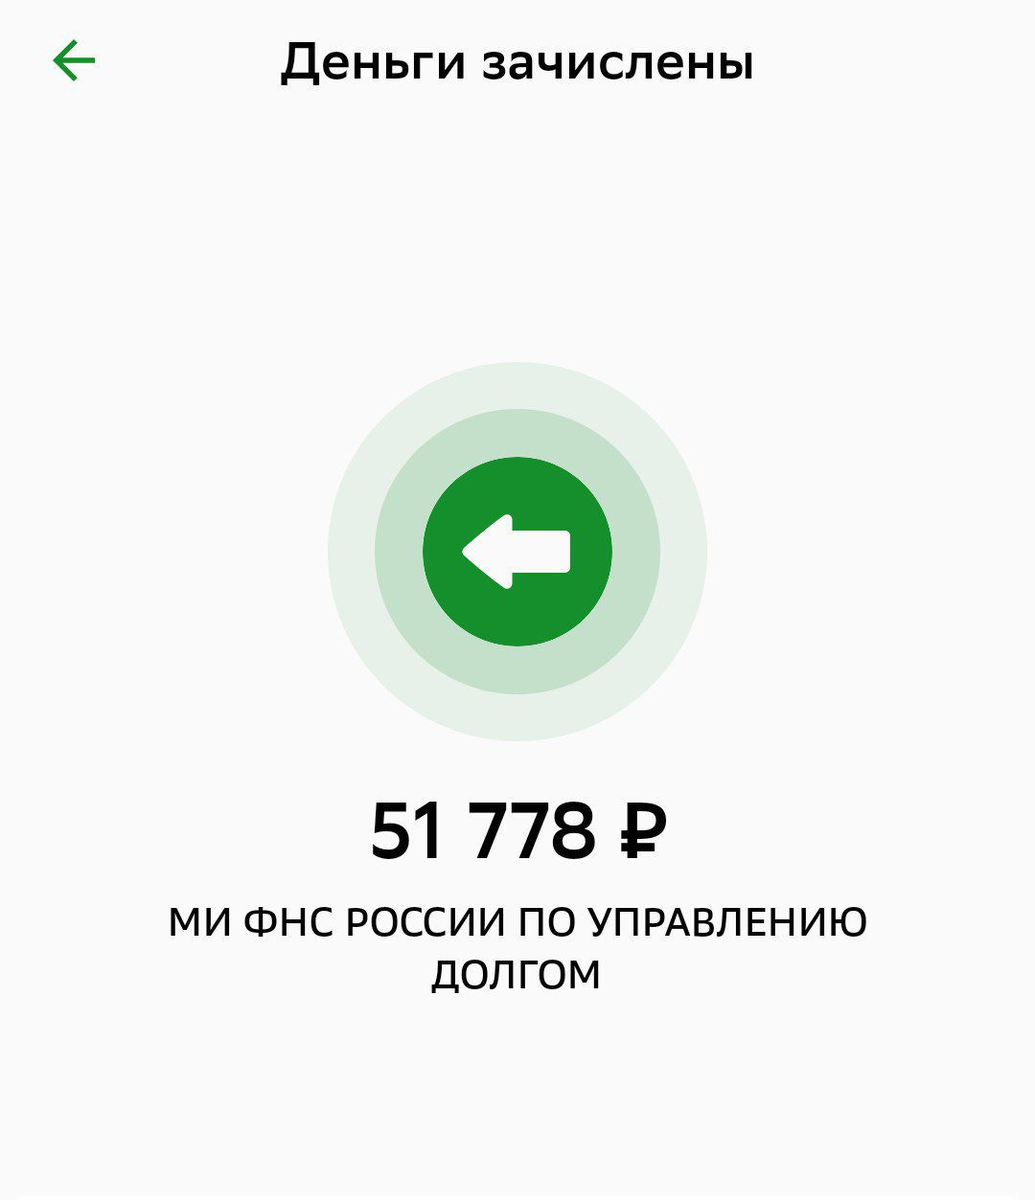  Обнаружил, что мне наконец-то из налоговой поступил налоговый вычет по моему индивидуальному инвестиционному счёту.

+51778 рублей 
Не спрашивайте куда делись ещё 222 рубля.